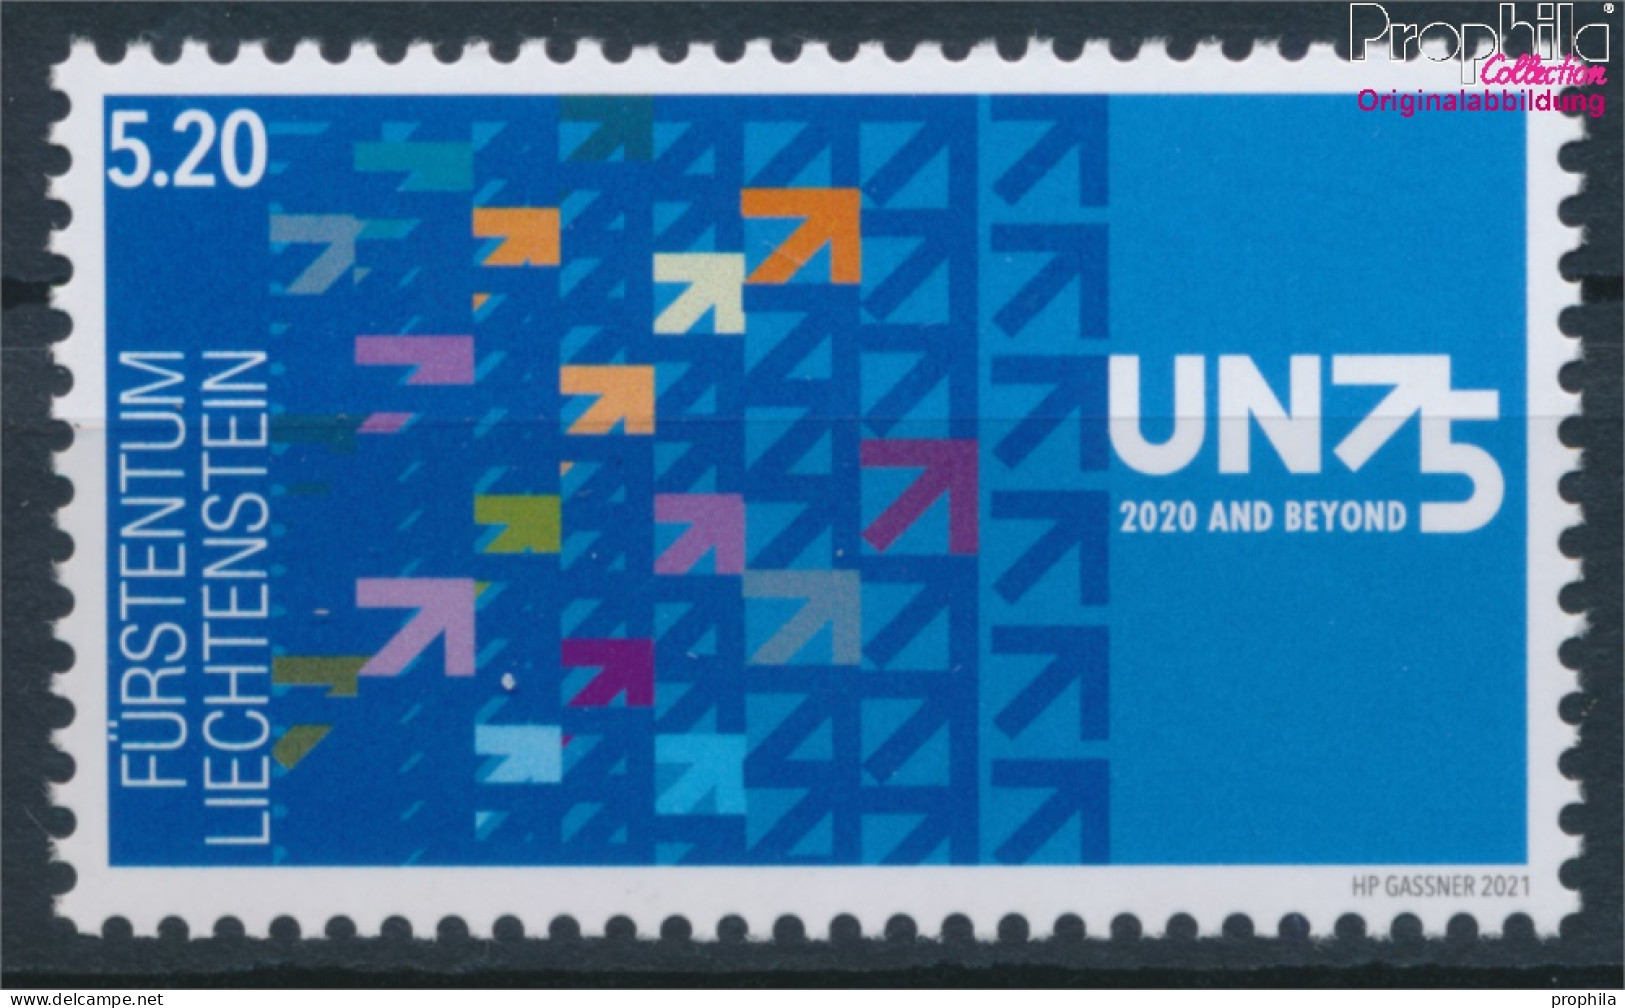 Liechtenstein 2003 (kompl.Ausg.) Postfrisch 2021 Generalversammlung Der UN (10391296 - Unused Stamps